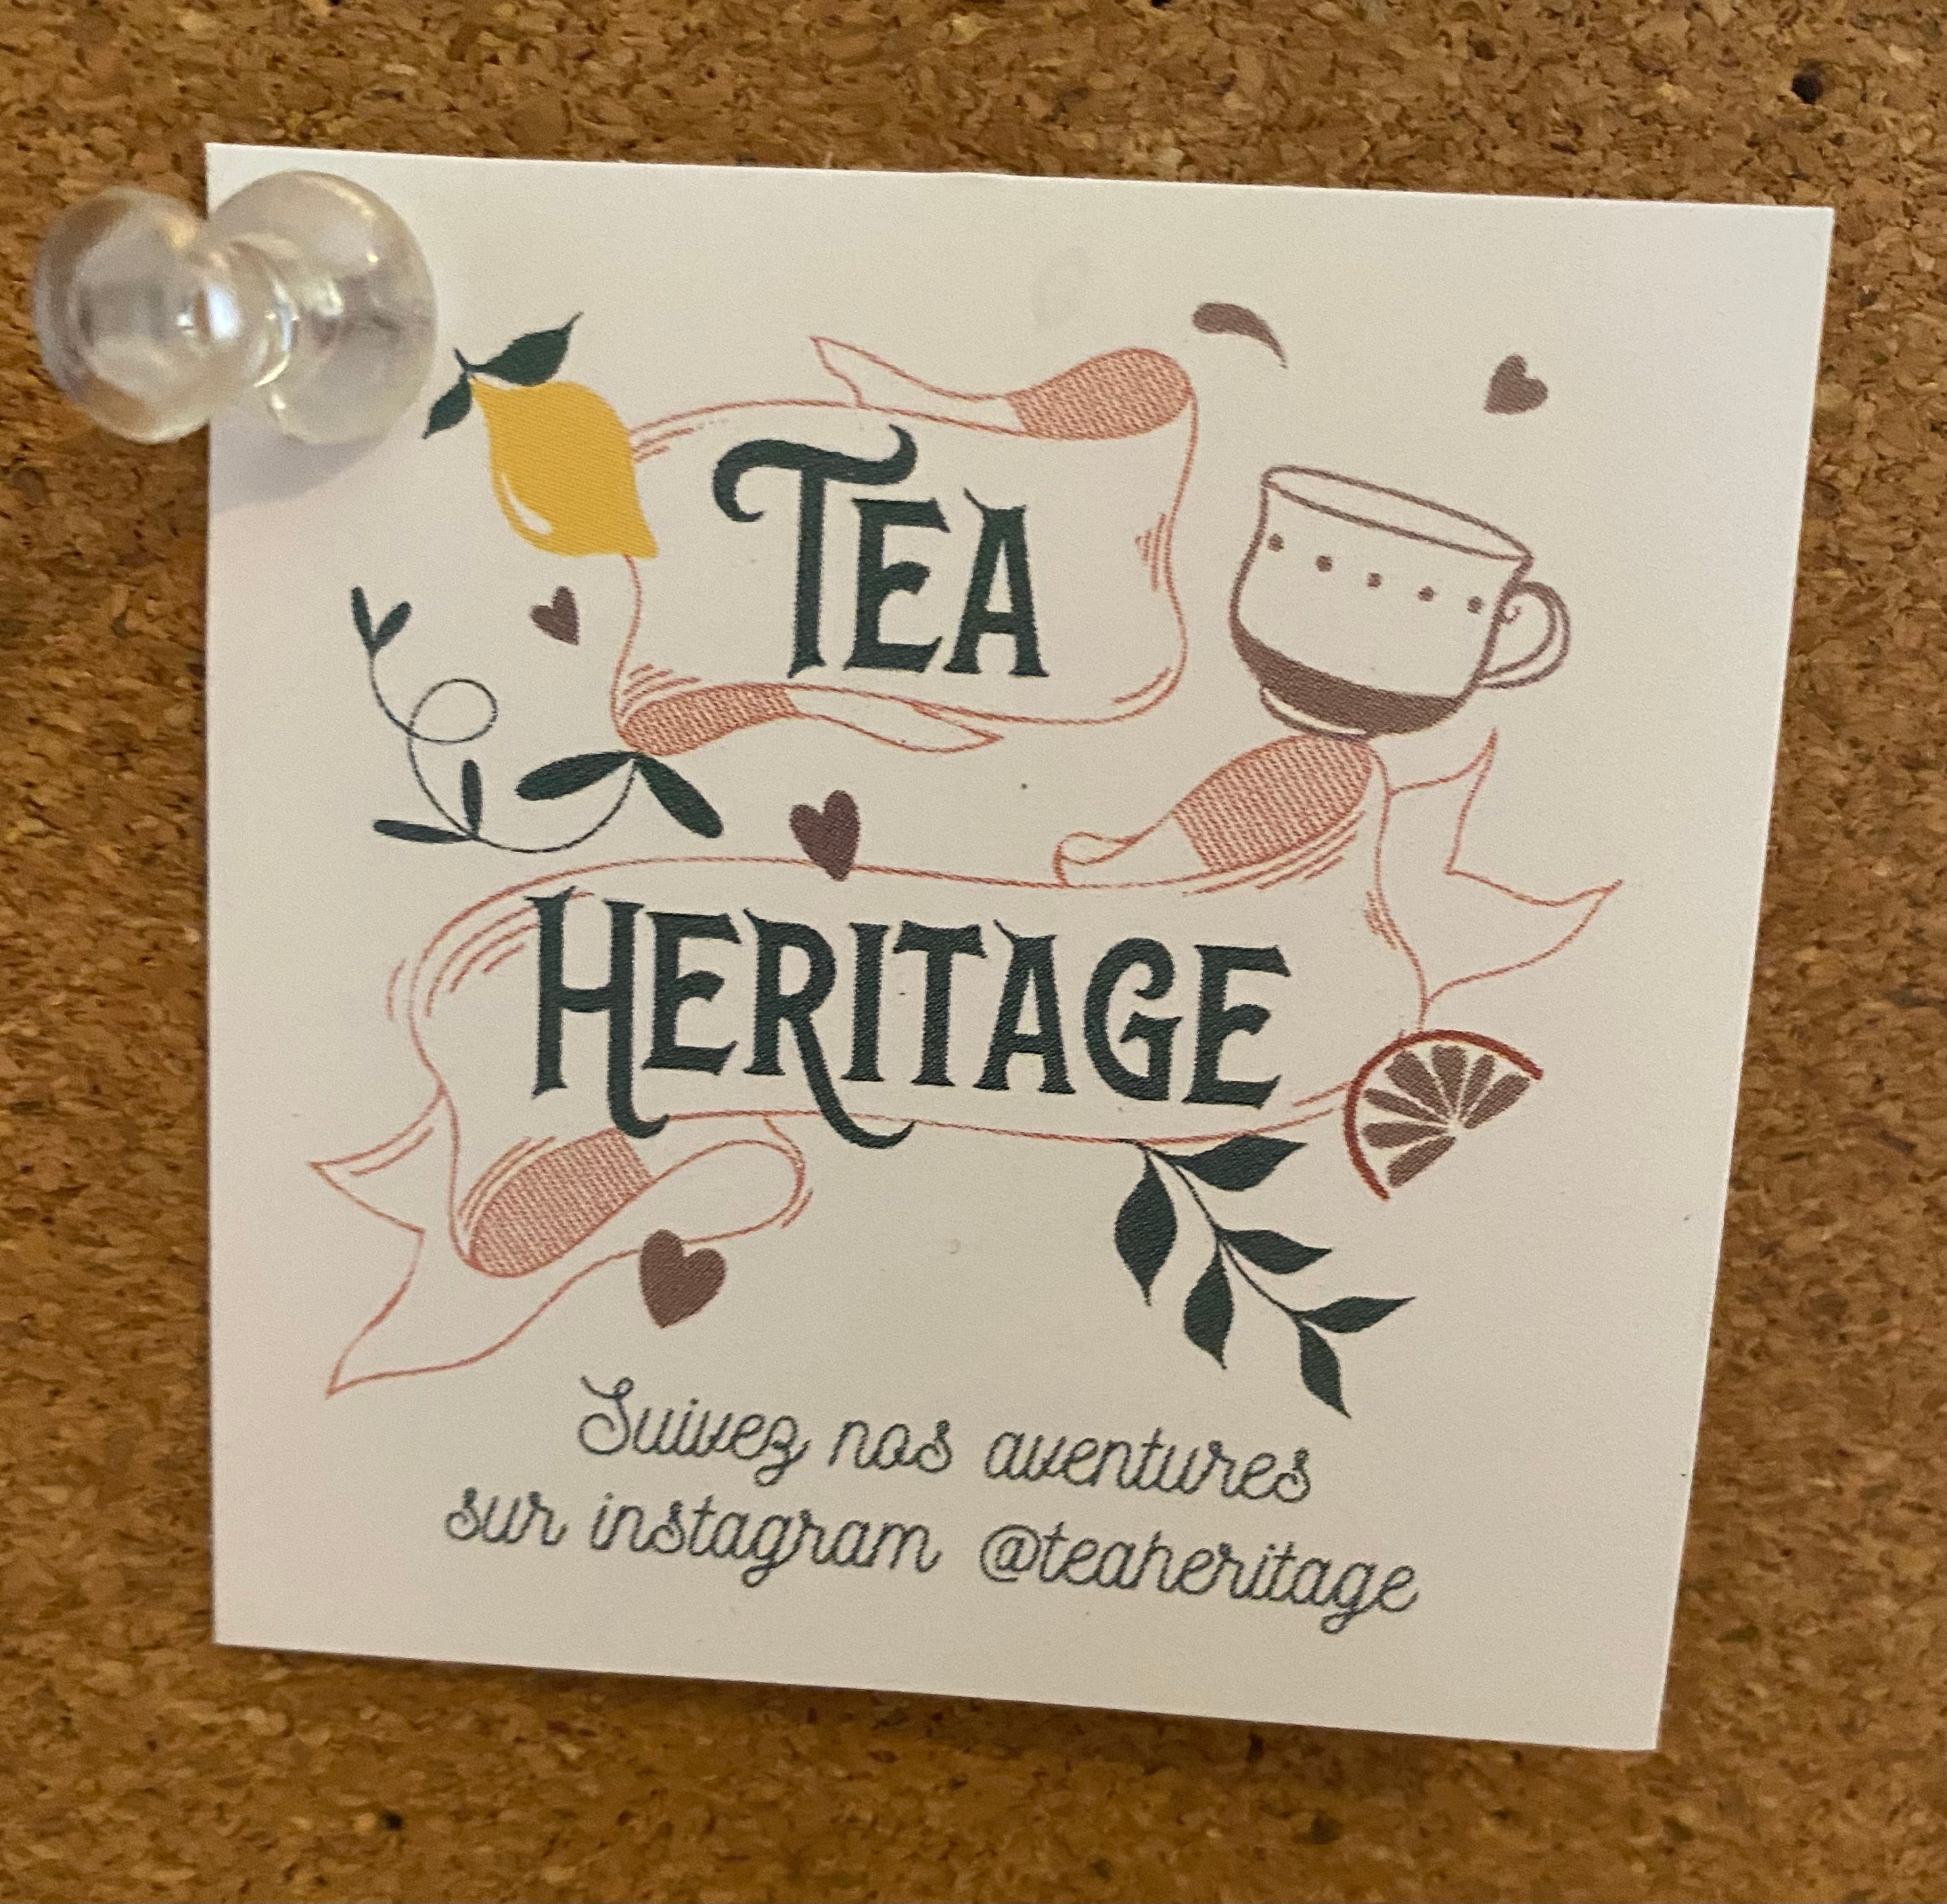 Maple Leaf Tea Bag by Tea Heritage